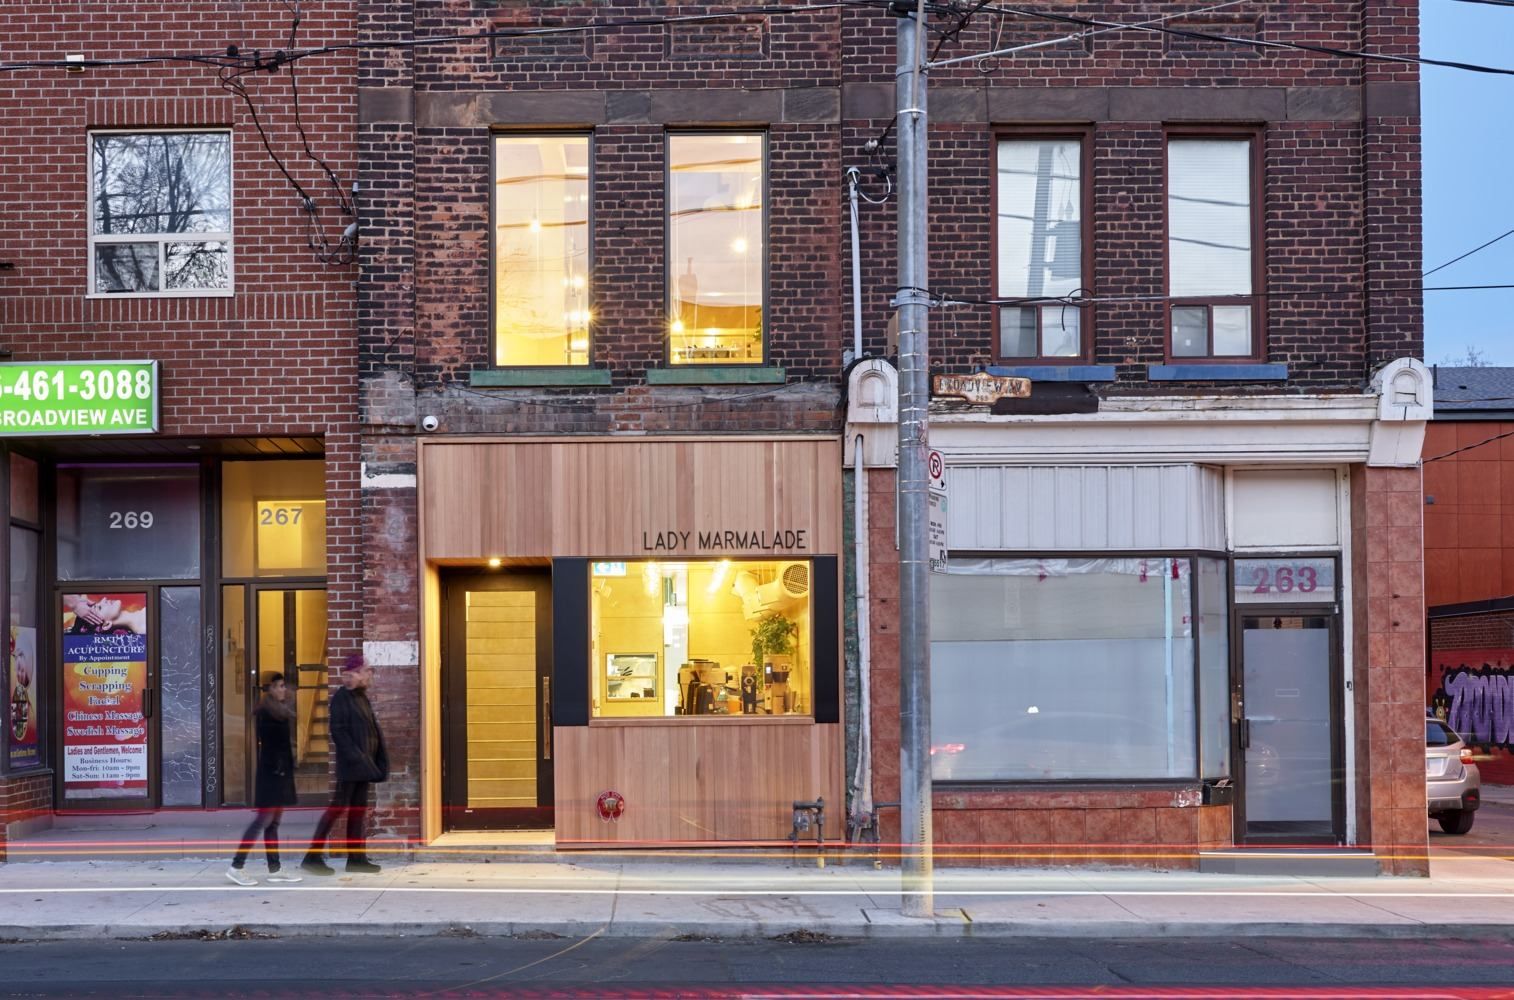 "Мармеладний ресторан": дерев'яний інтер'єр маленького закладу в Канаді